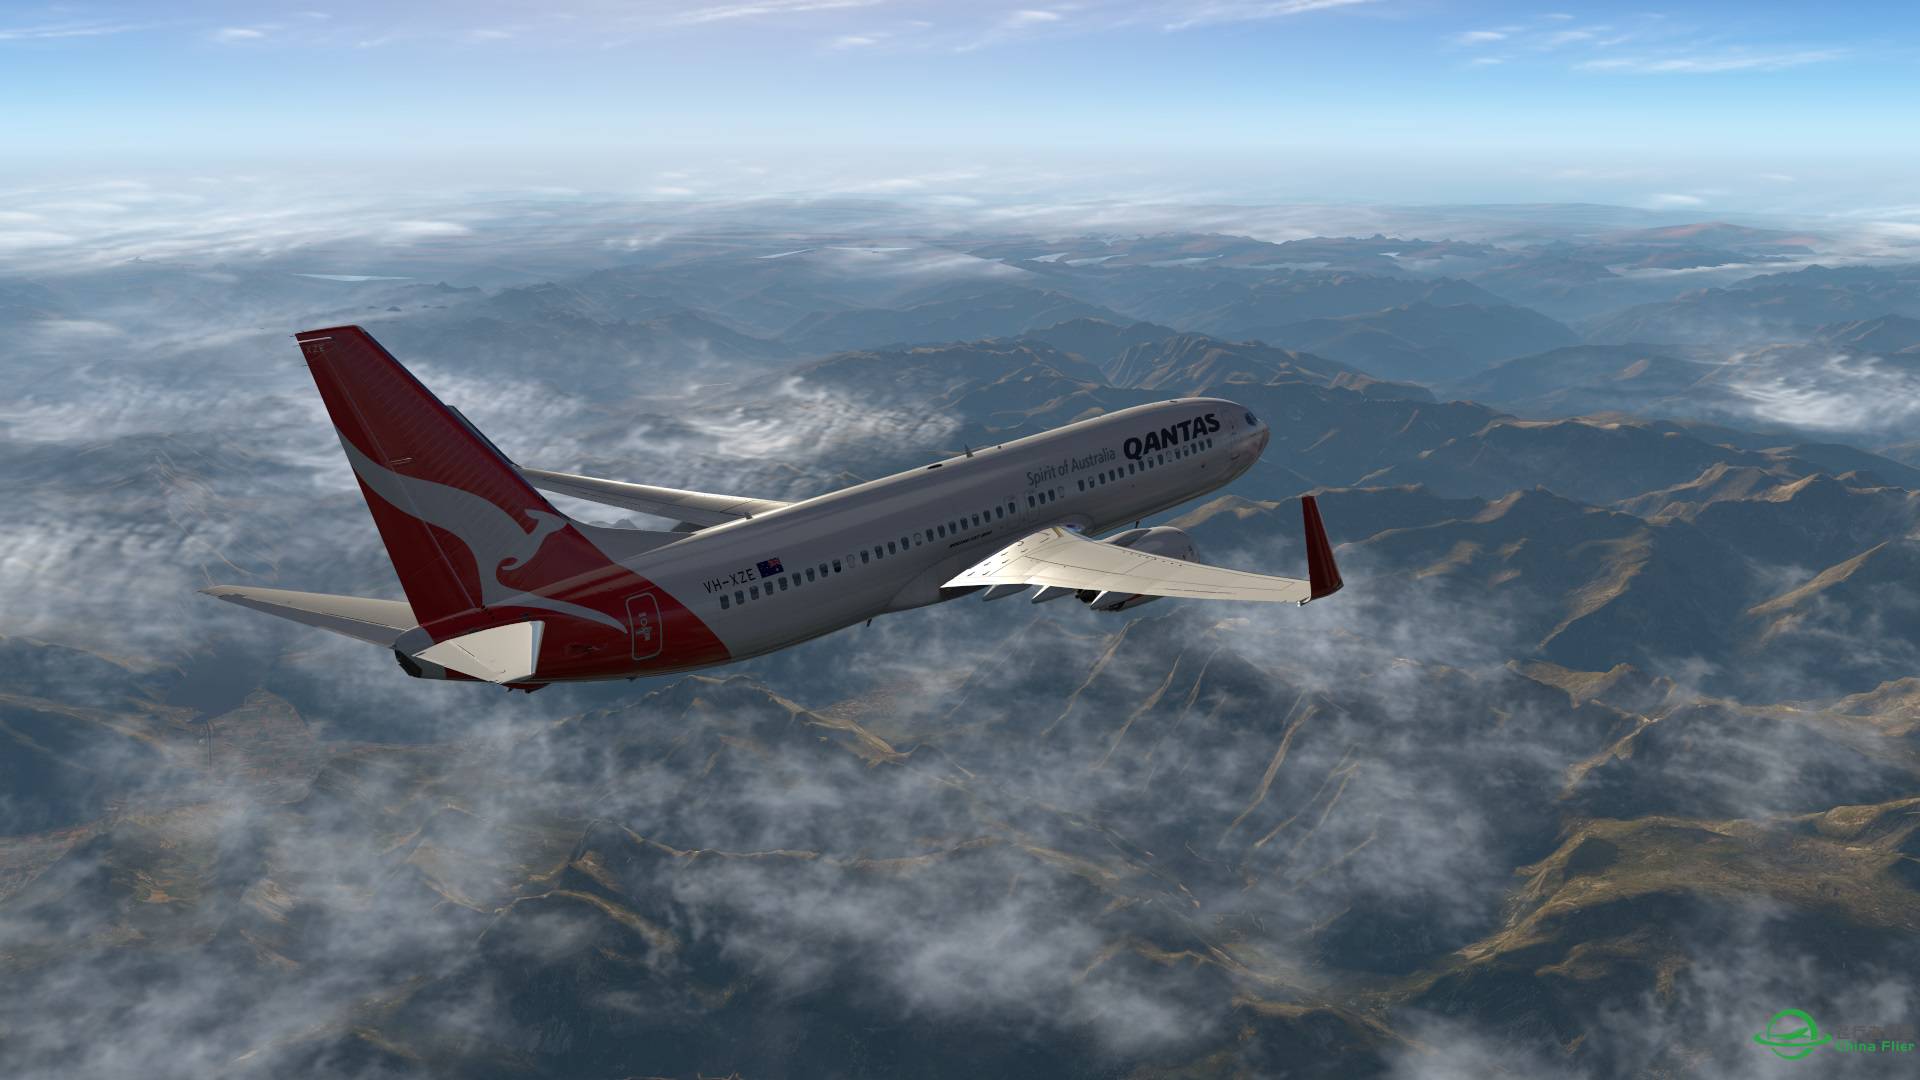 飞跃阿尔卑斯山 X-plane 11-4987 